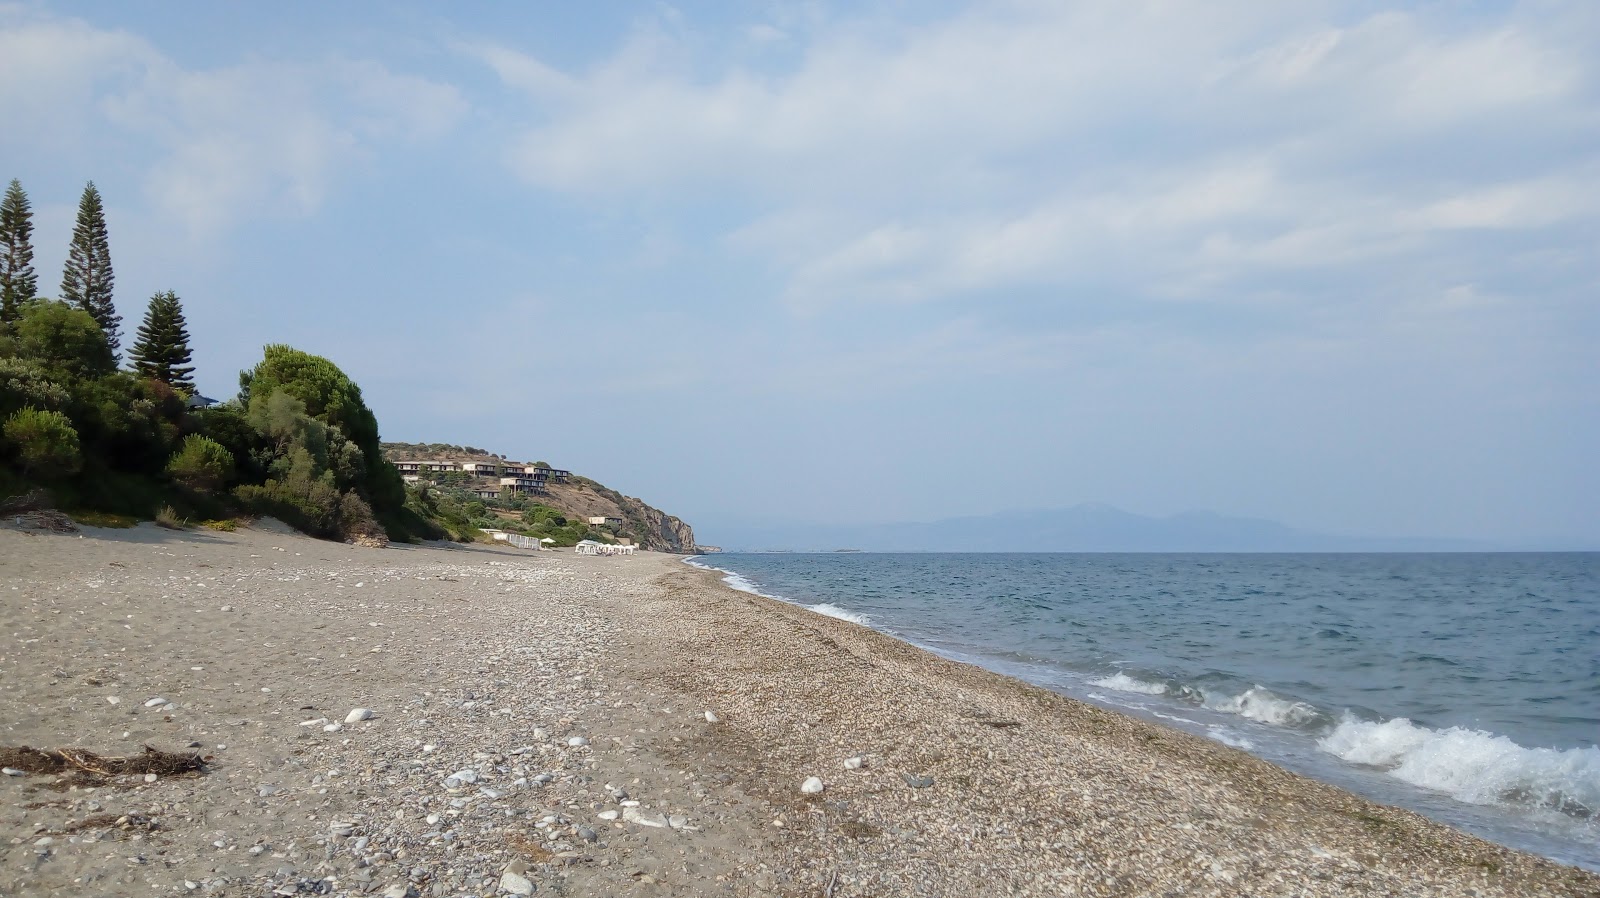 Fotografie cu Selinitsa beach cu o suprafață de nisip gri